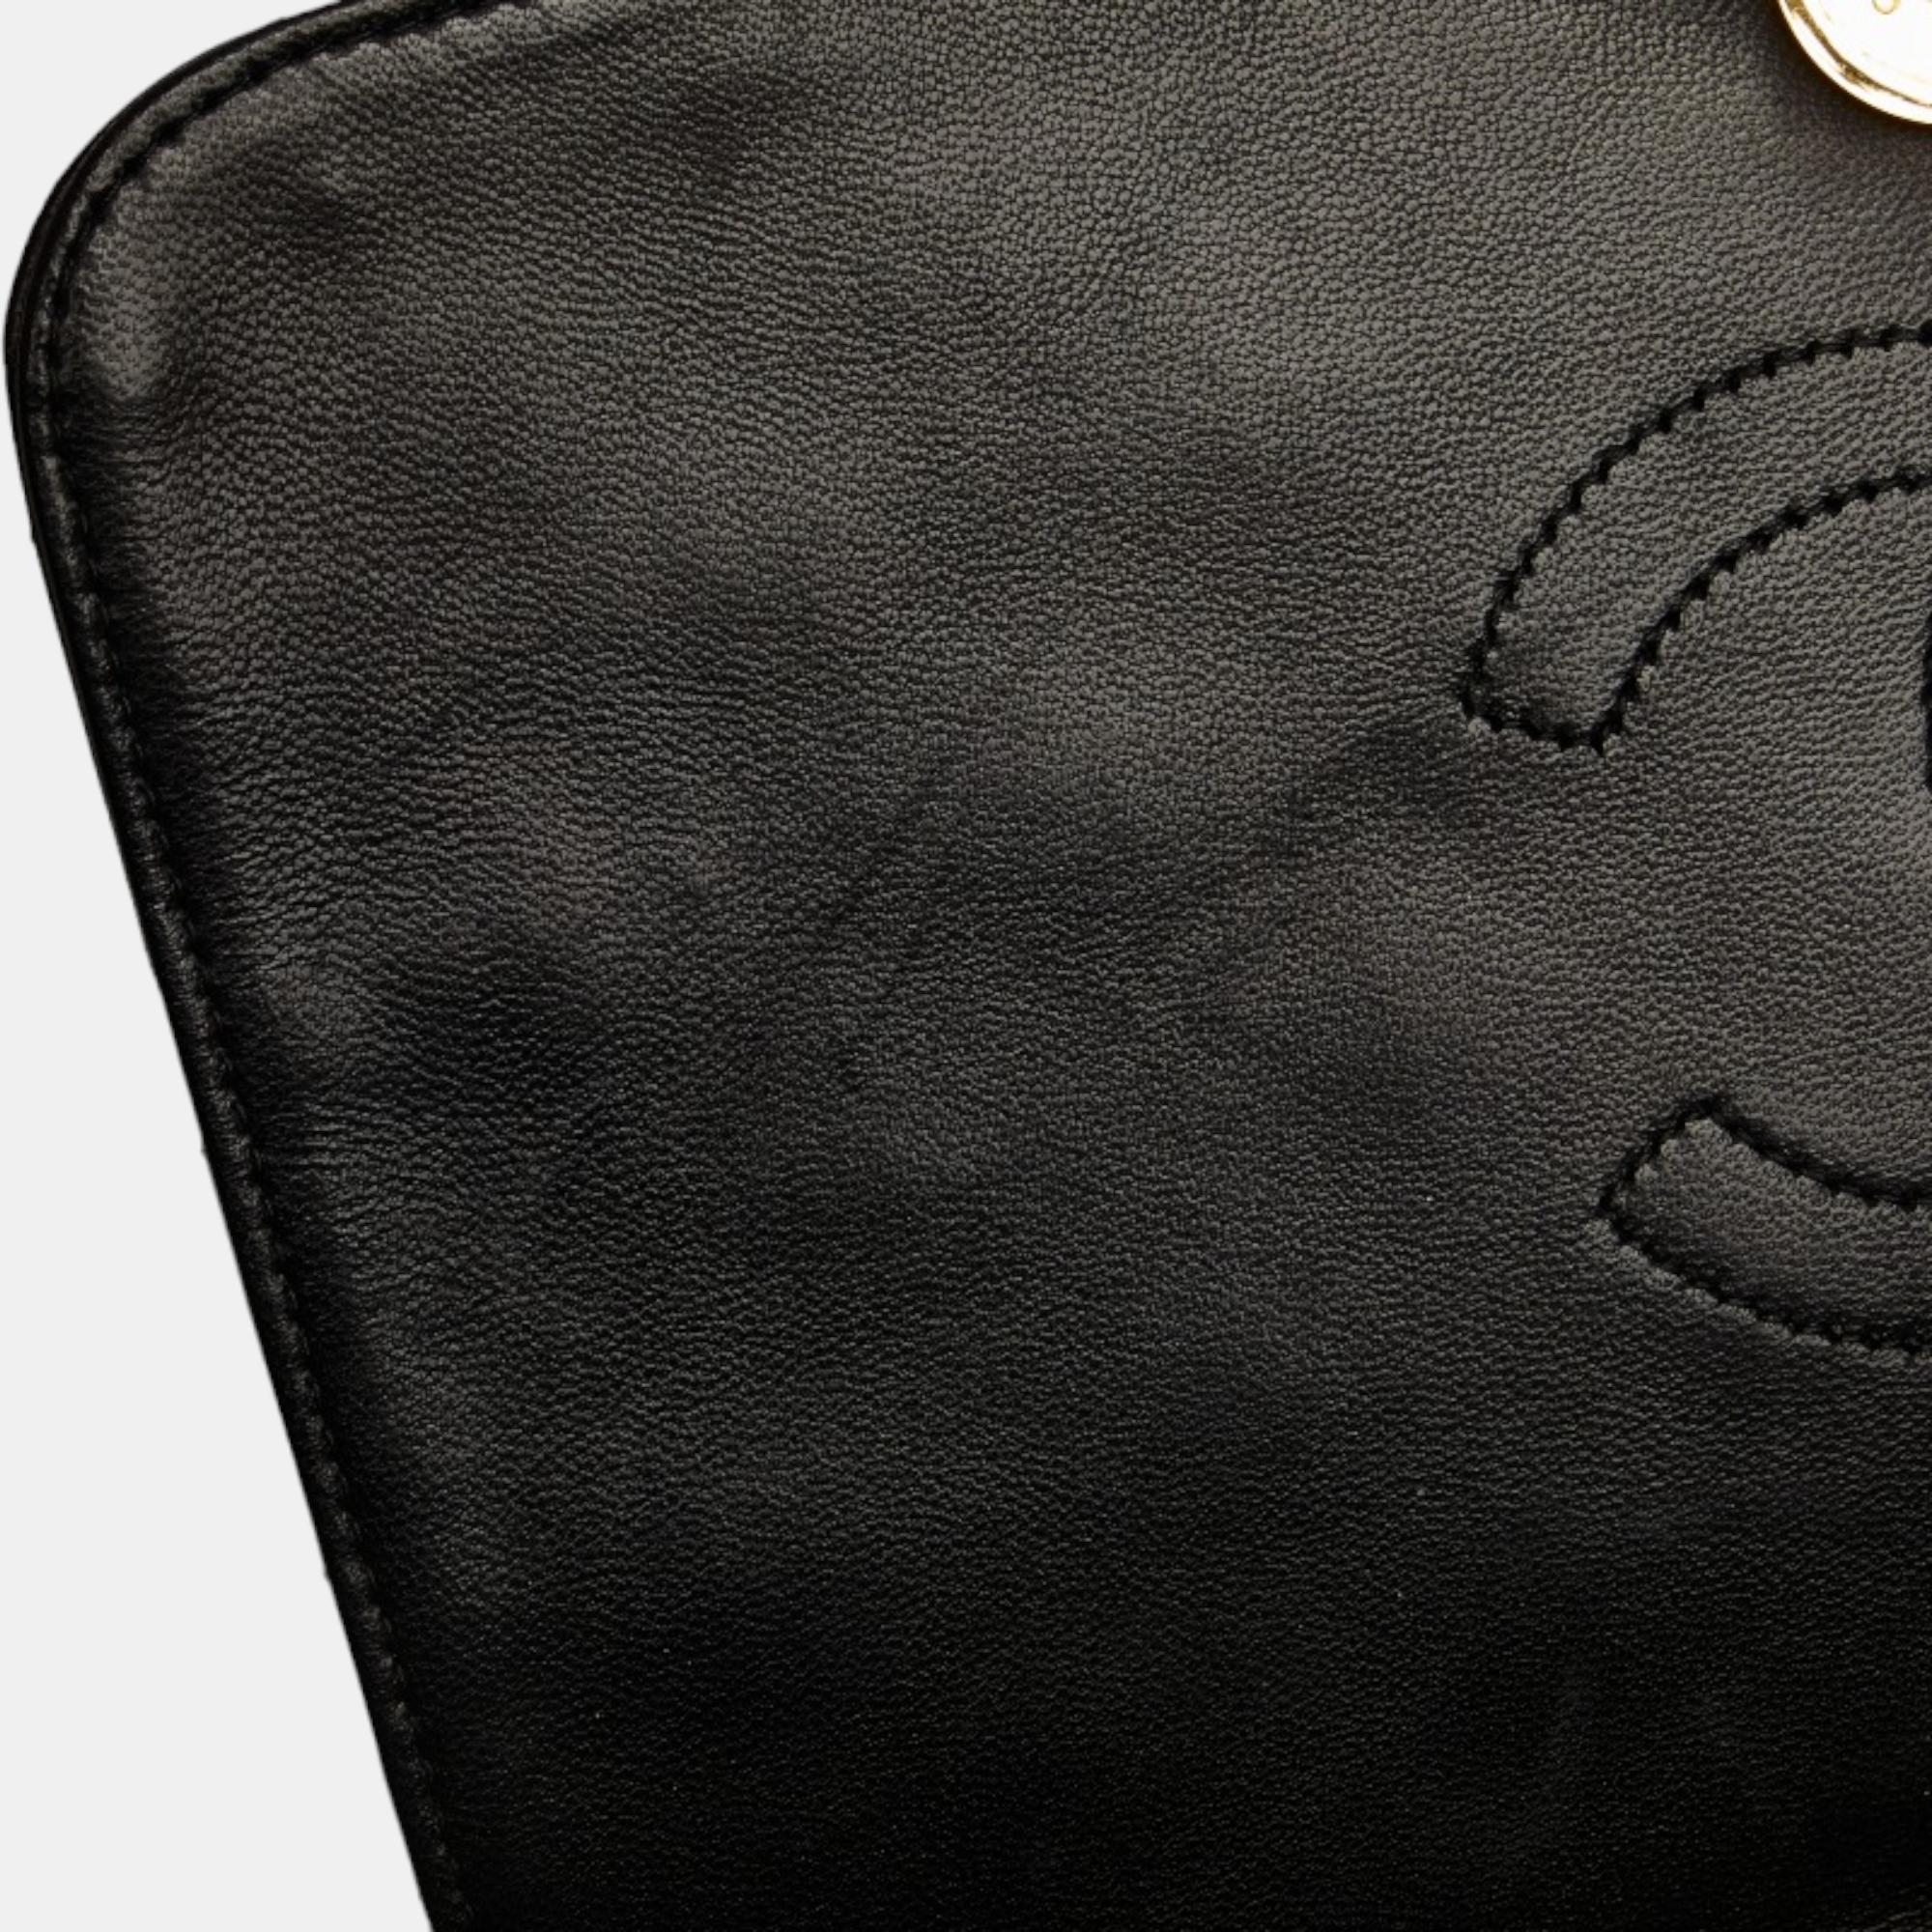 Chanel Black Leather Full Flap Shoulder Bag